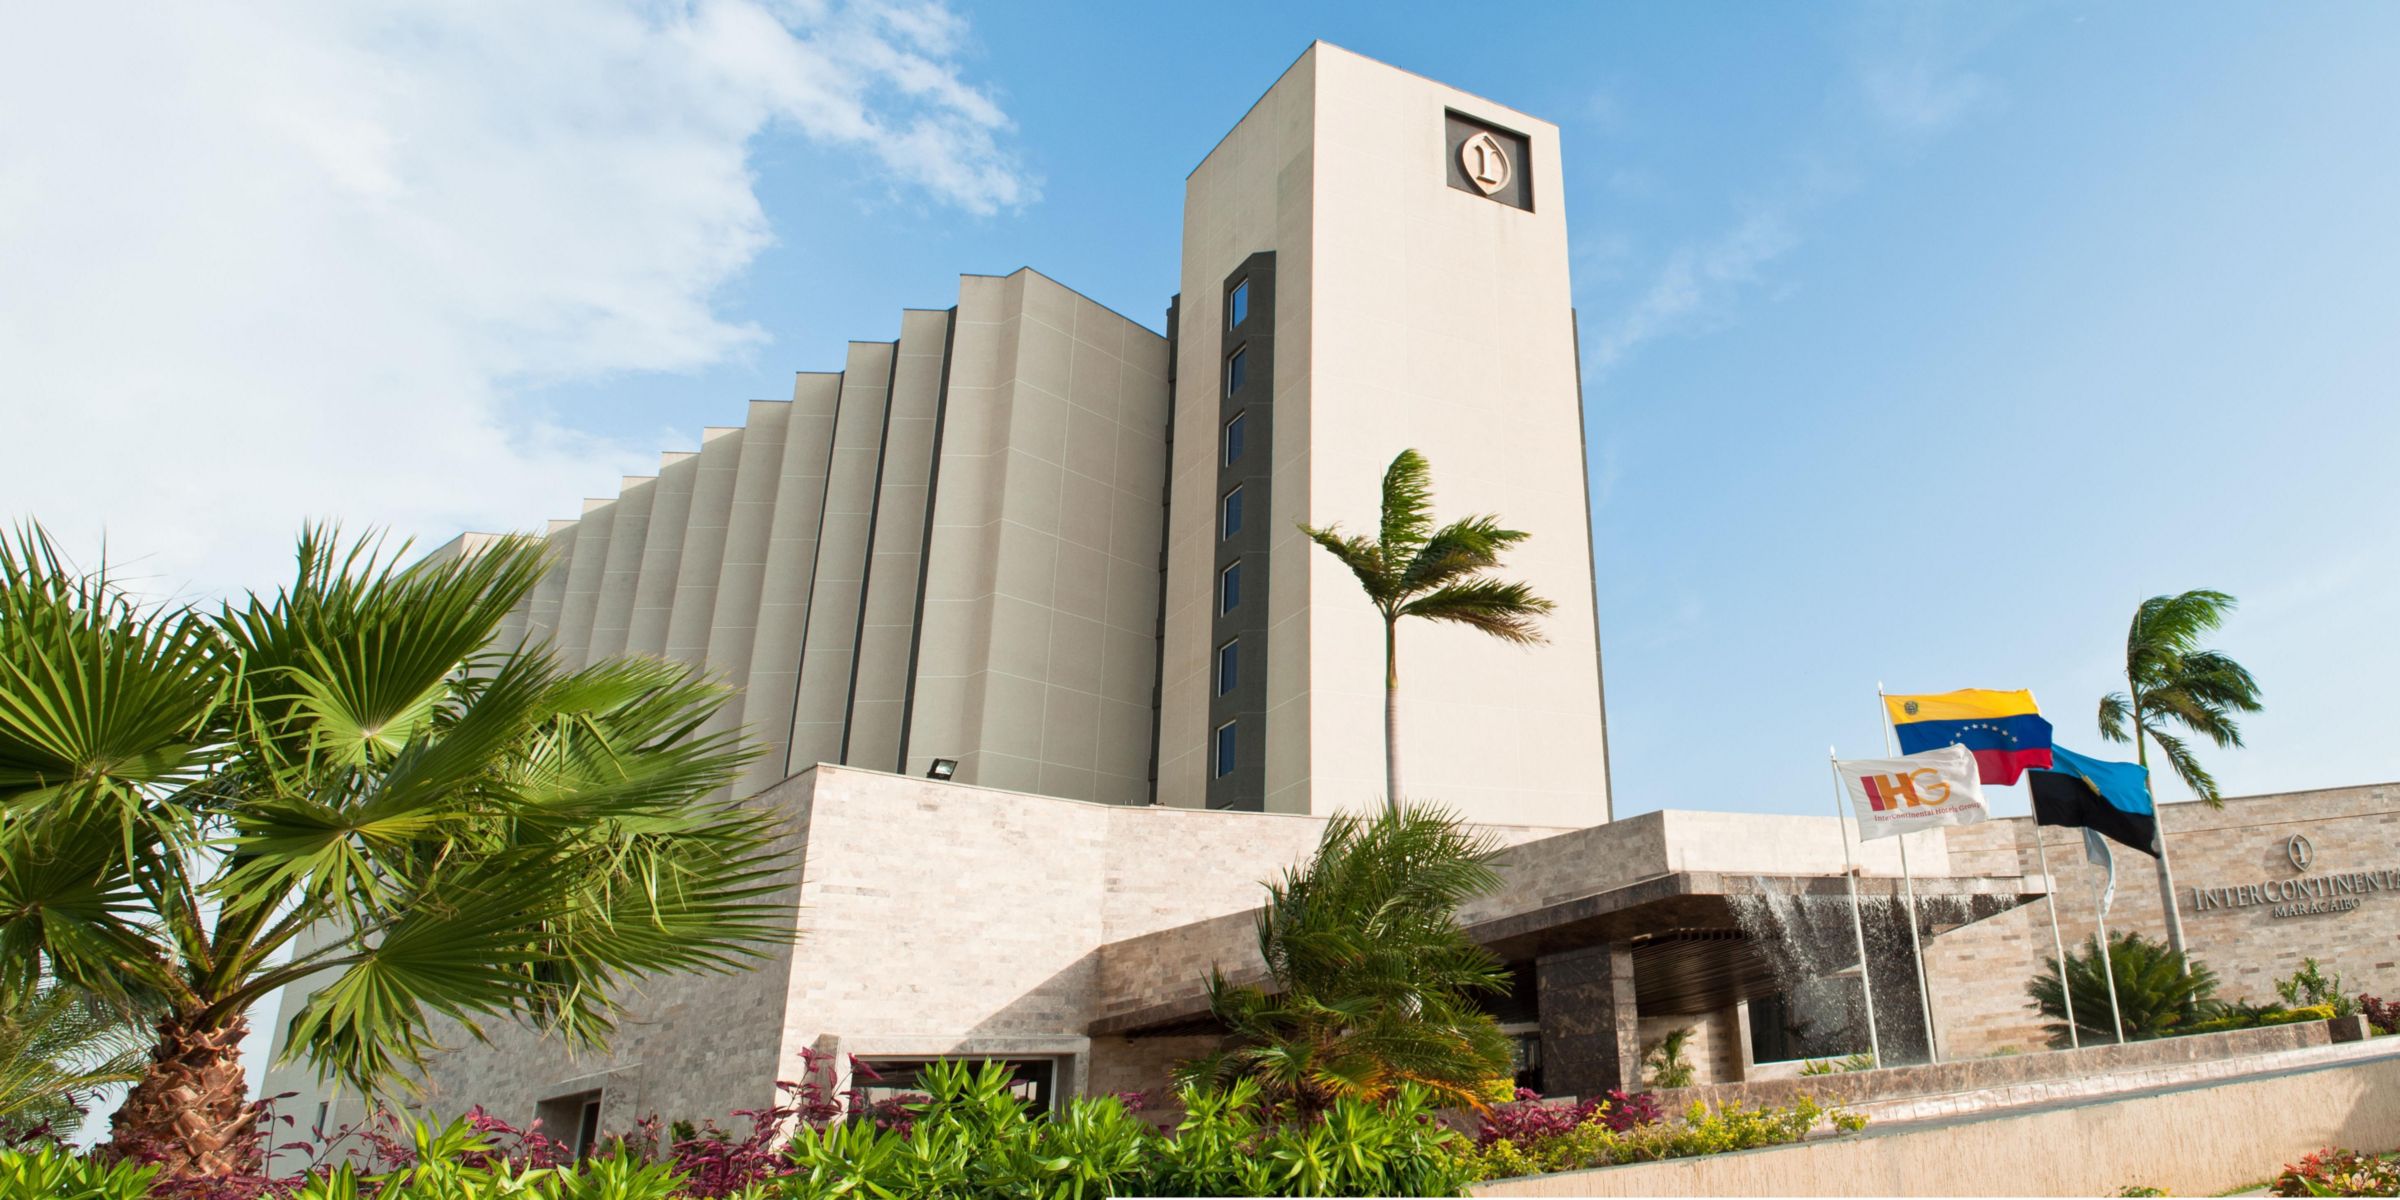 Maracaibo Hotels: InterContinental Maracaibo Hotel in Maracaibo ...